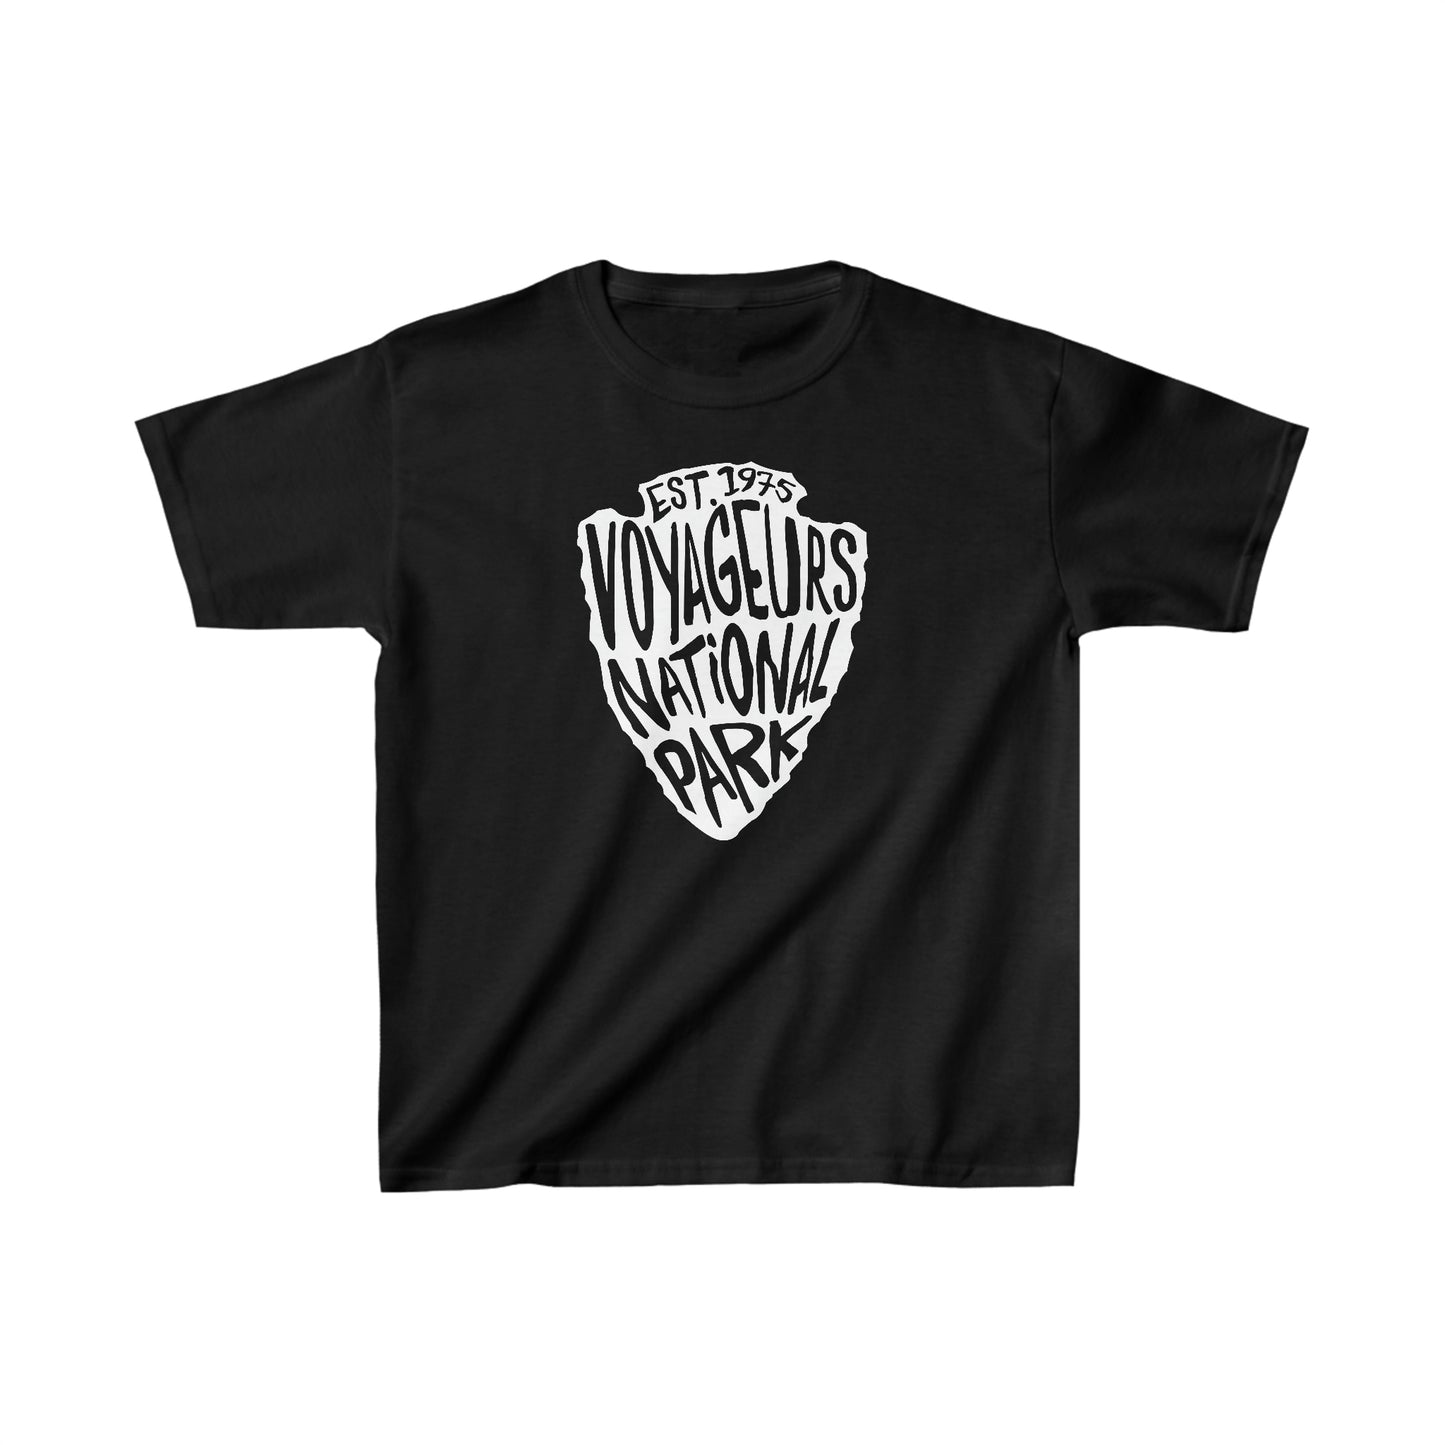 Voyageurs National Park Child T-Shirt - Arrowhead Design